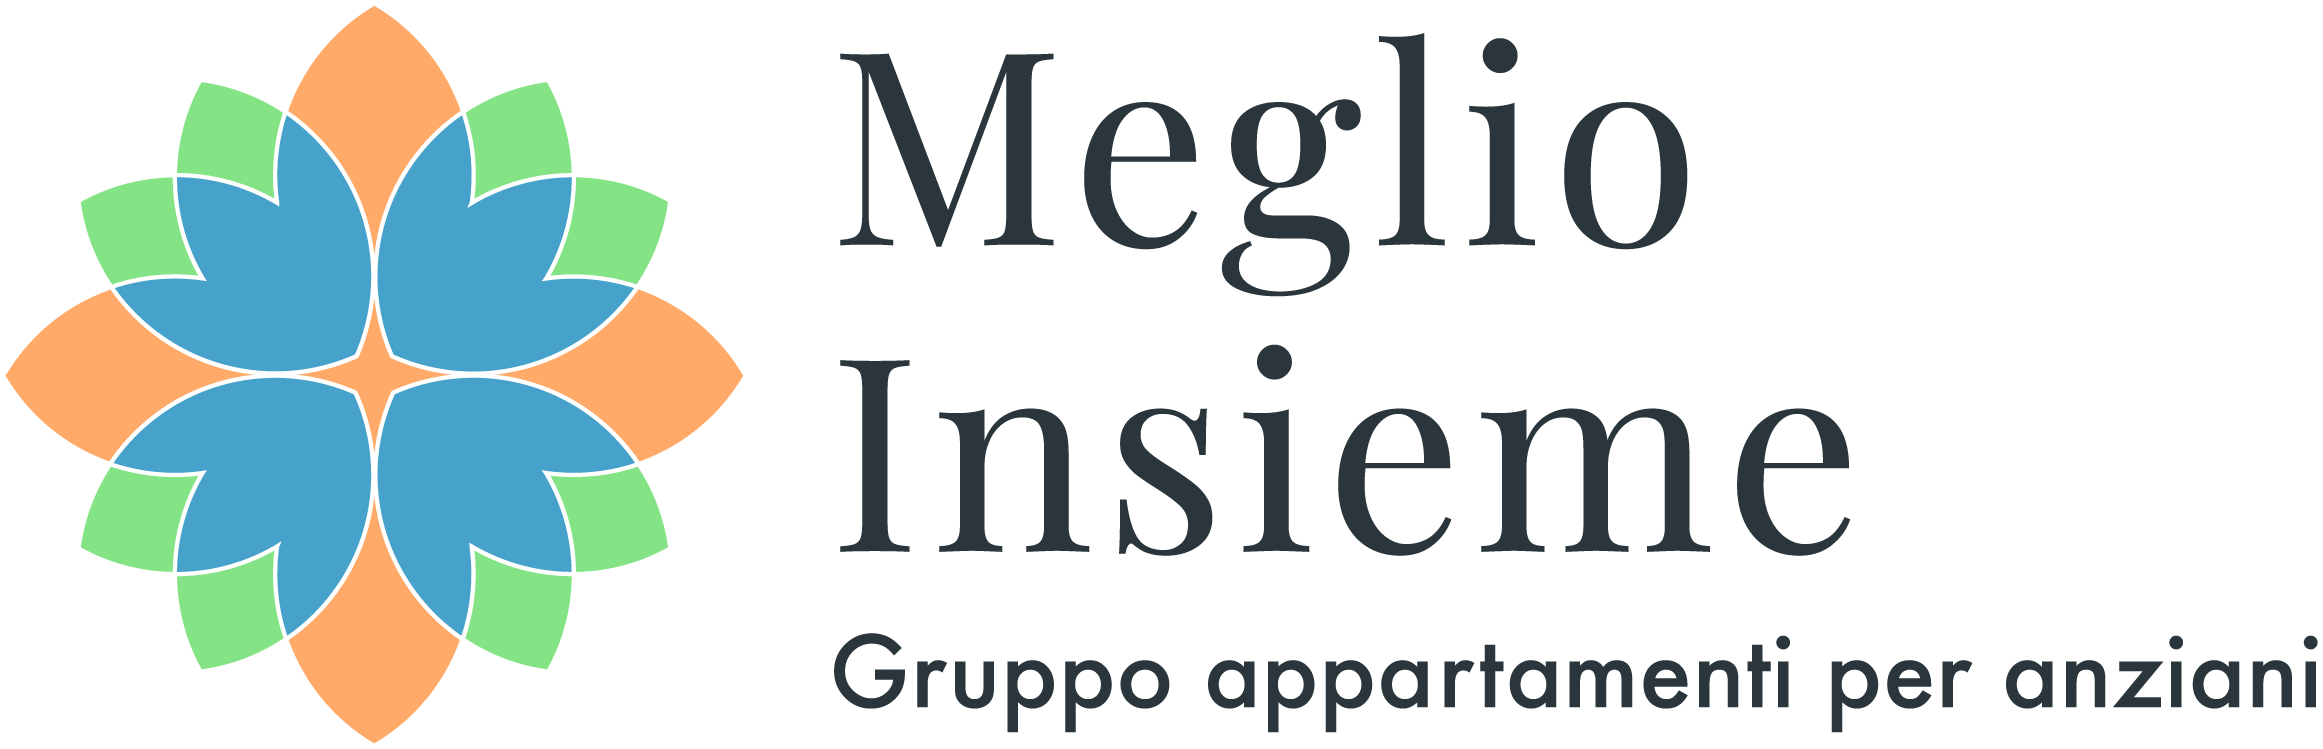 Logo Meglio Insieme